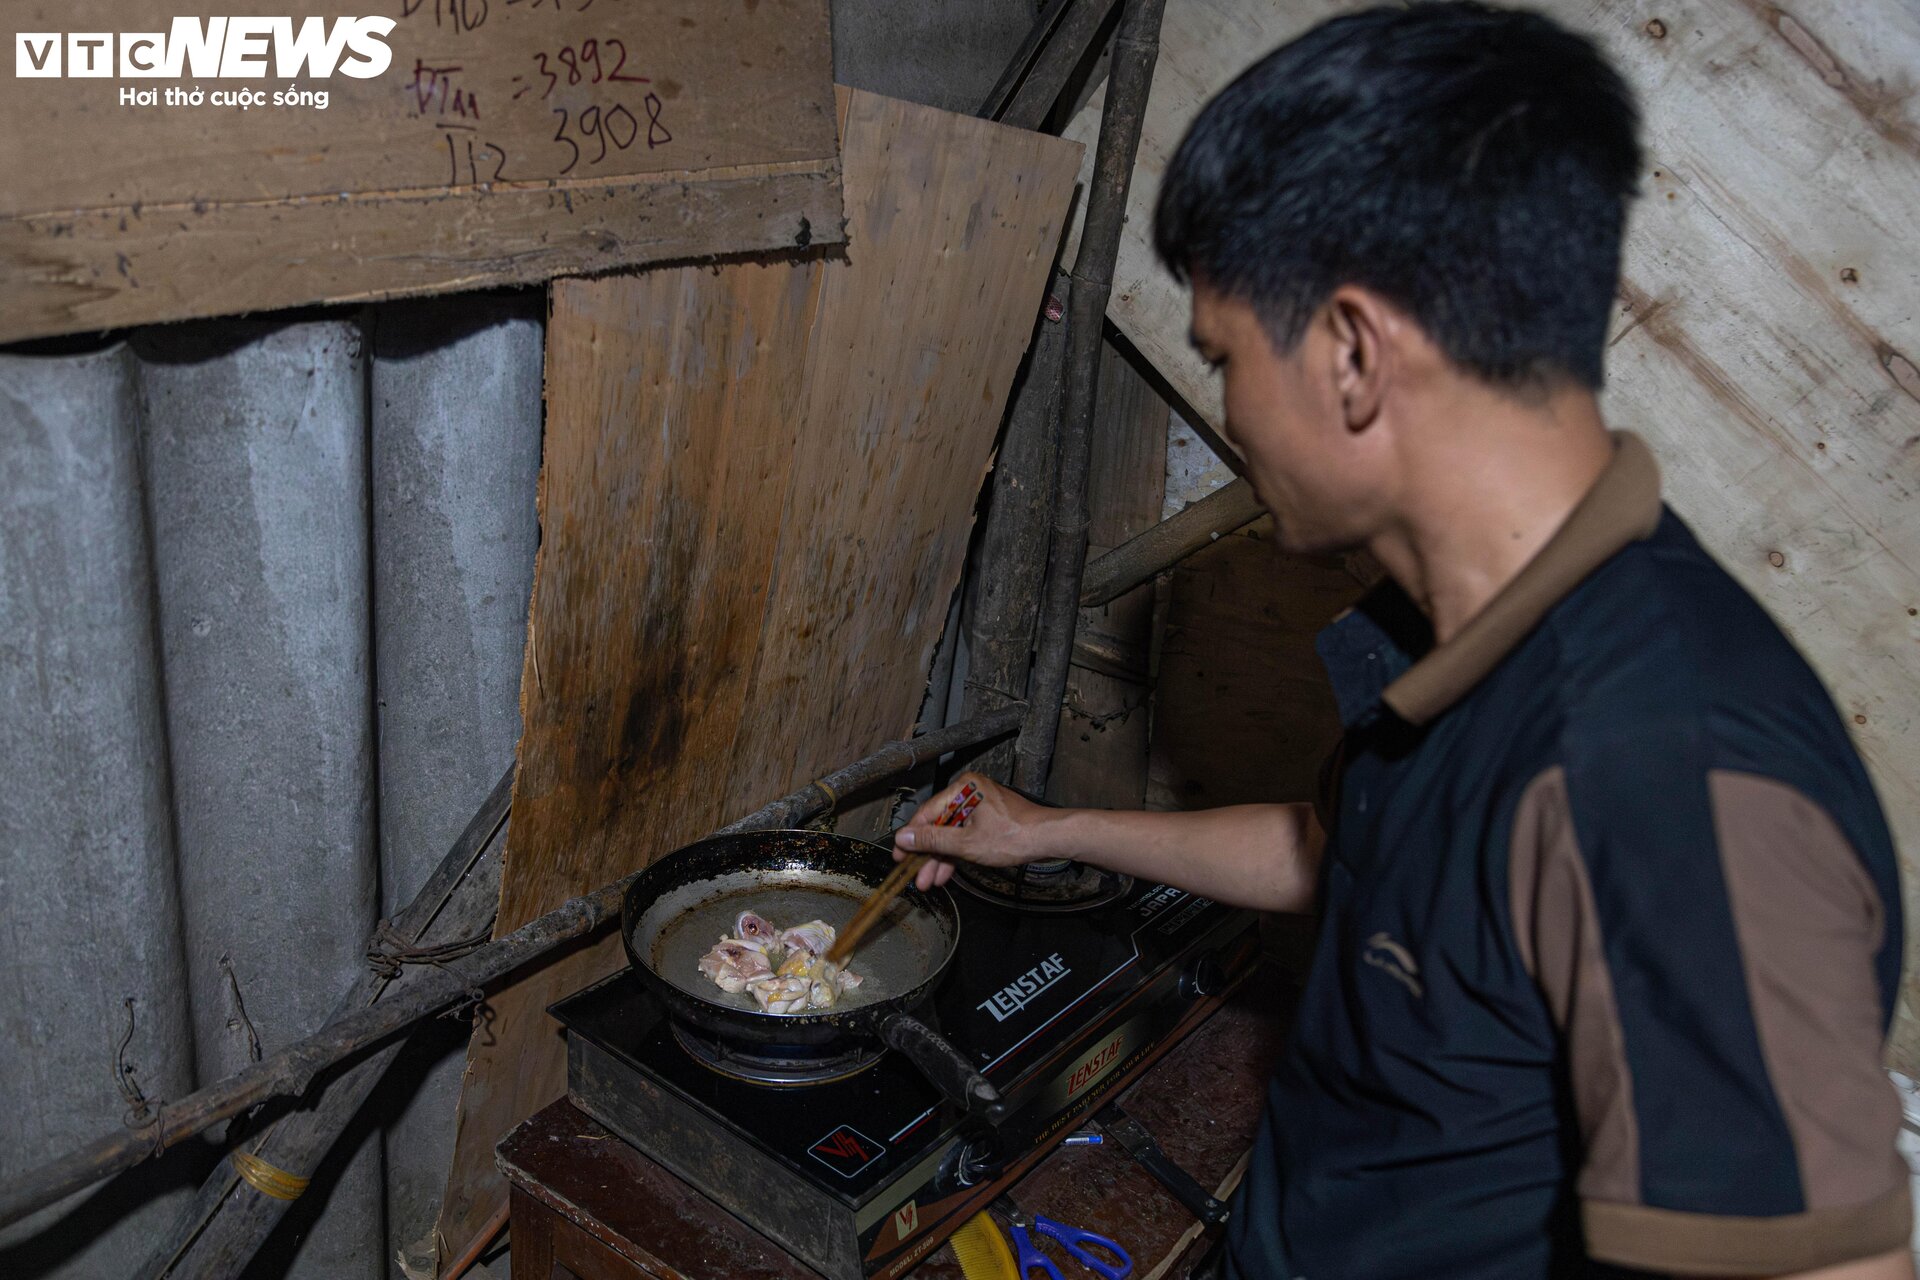 Bữa cơm khốn khó thời vật giá leo thang ở xóm trọ nghèo giữa Hà Nội - 12